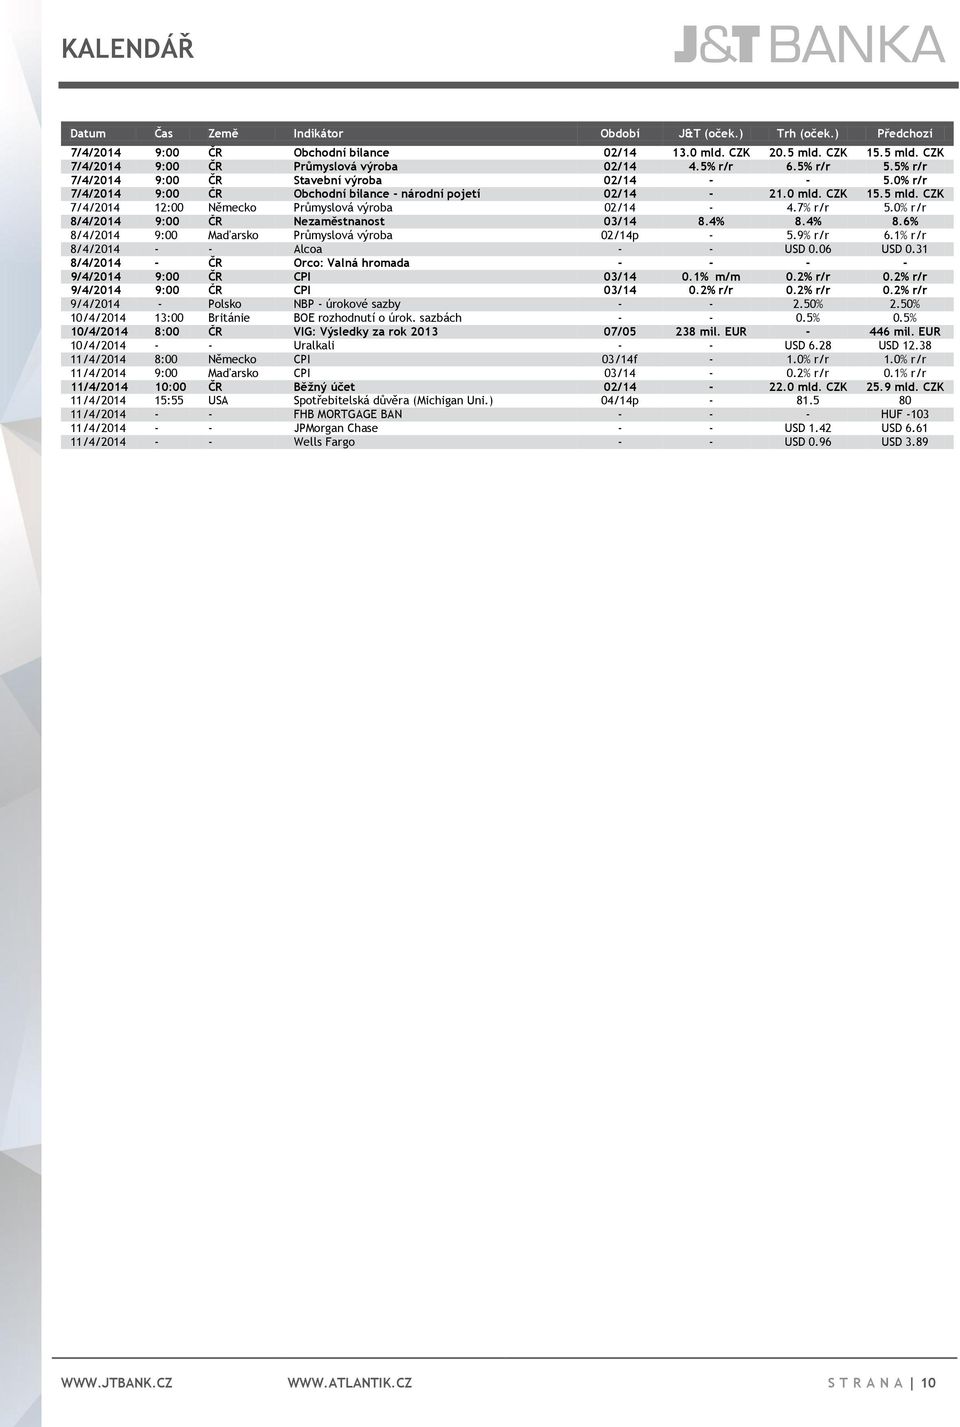 CZK 7/4/2014 12:00 Německo Průmyslová výroba 02/14-4.7% r/r 5.0% r/r 8/4/2014 9:00 ČR Nezaměstnanost 03/14 8.4% 8.4% 8.6% 8/4/2014 9:00 Maďarsko Průmyslová výroba 02/14p - 5.9% r/r 6.